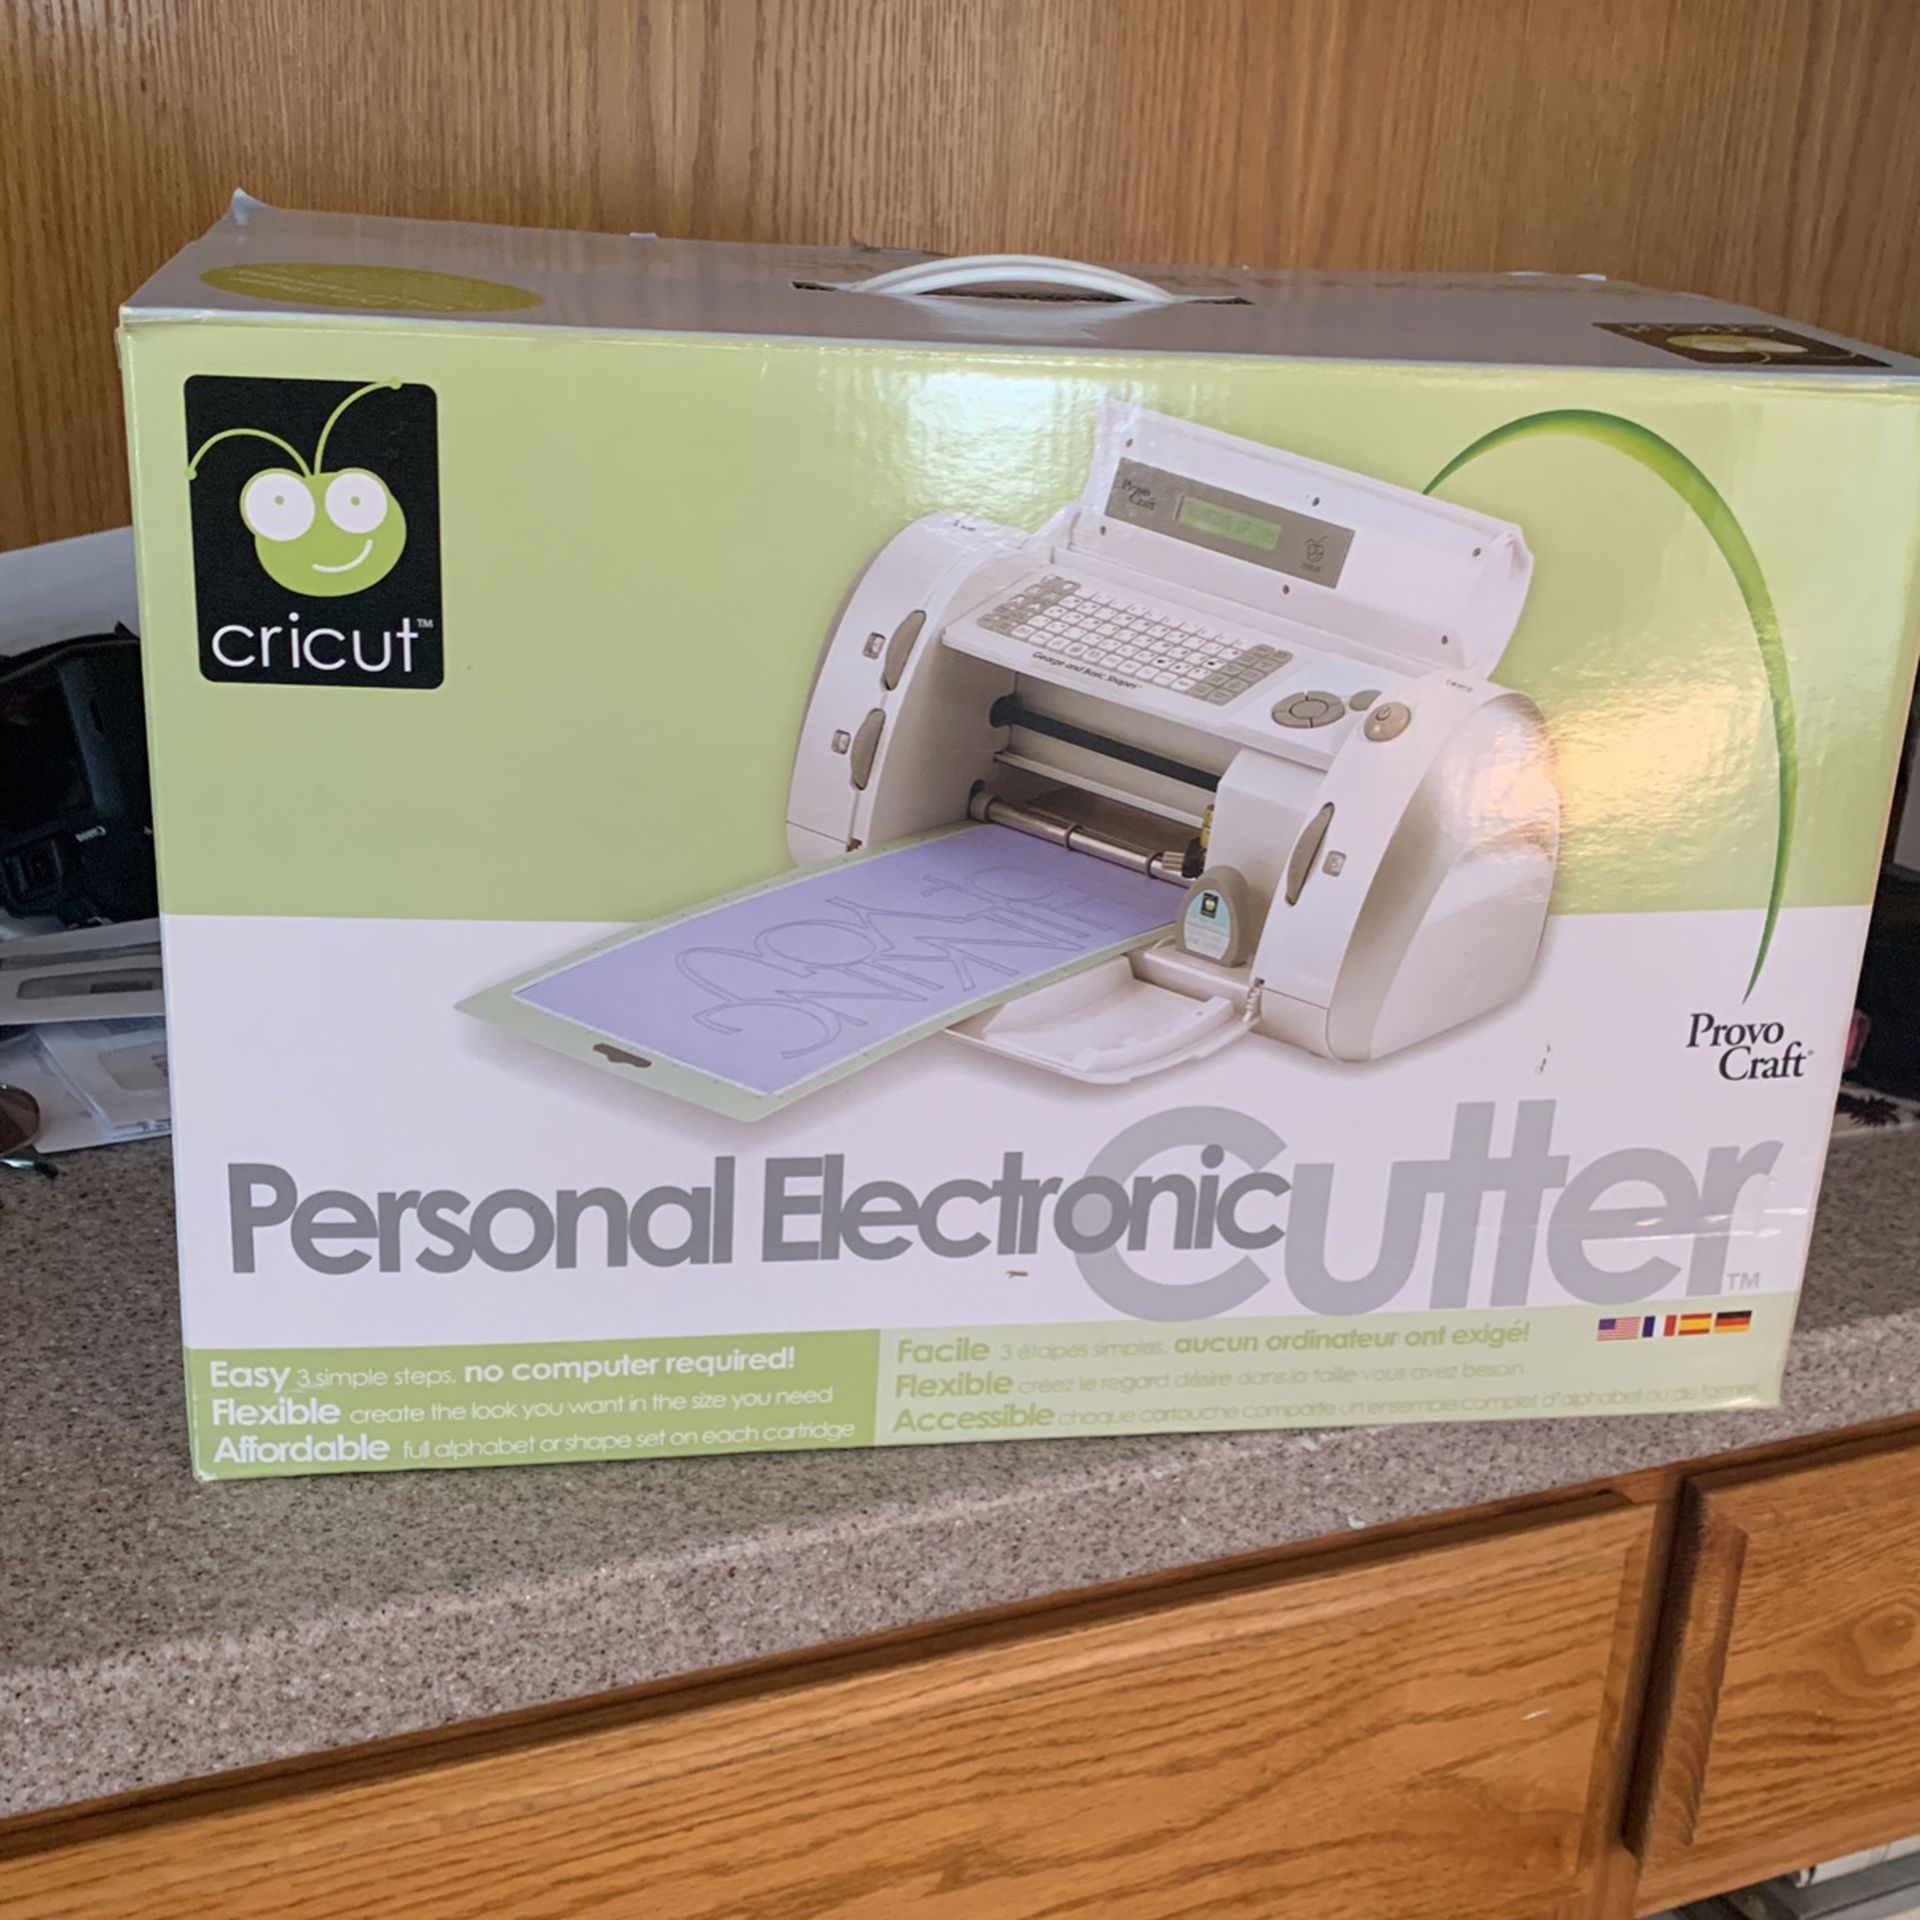 Cricut Personal Electronic Cutter Machine Provo Craft Die Cutting